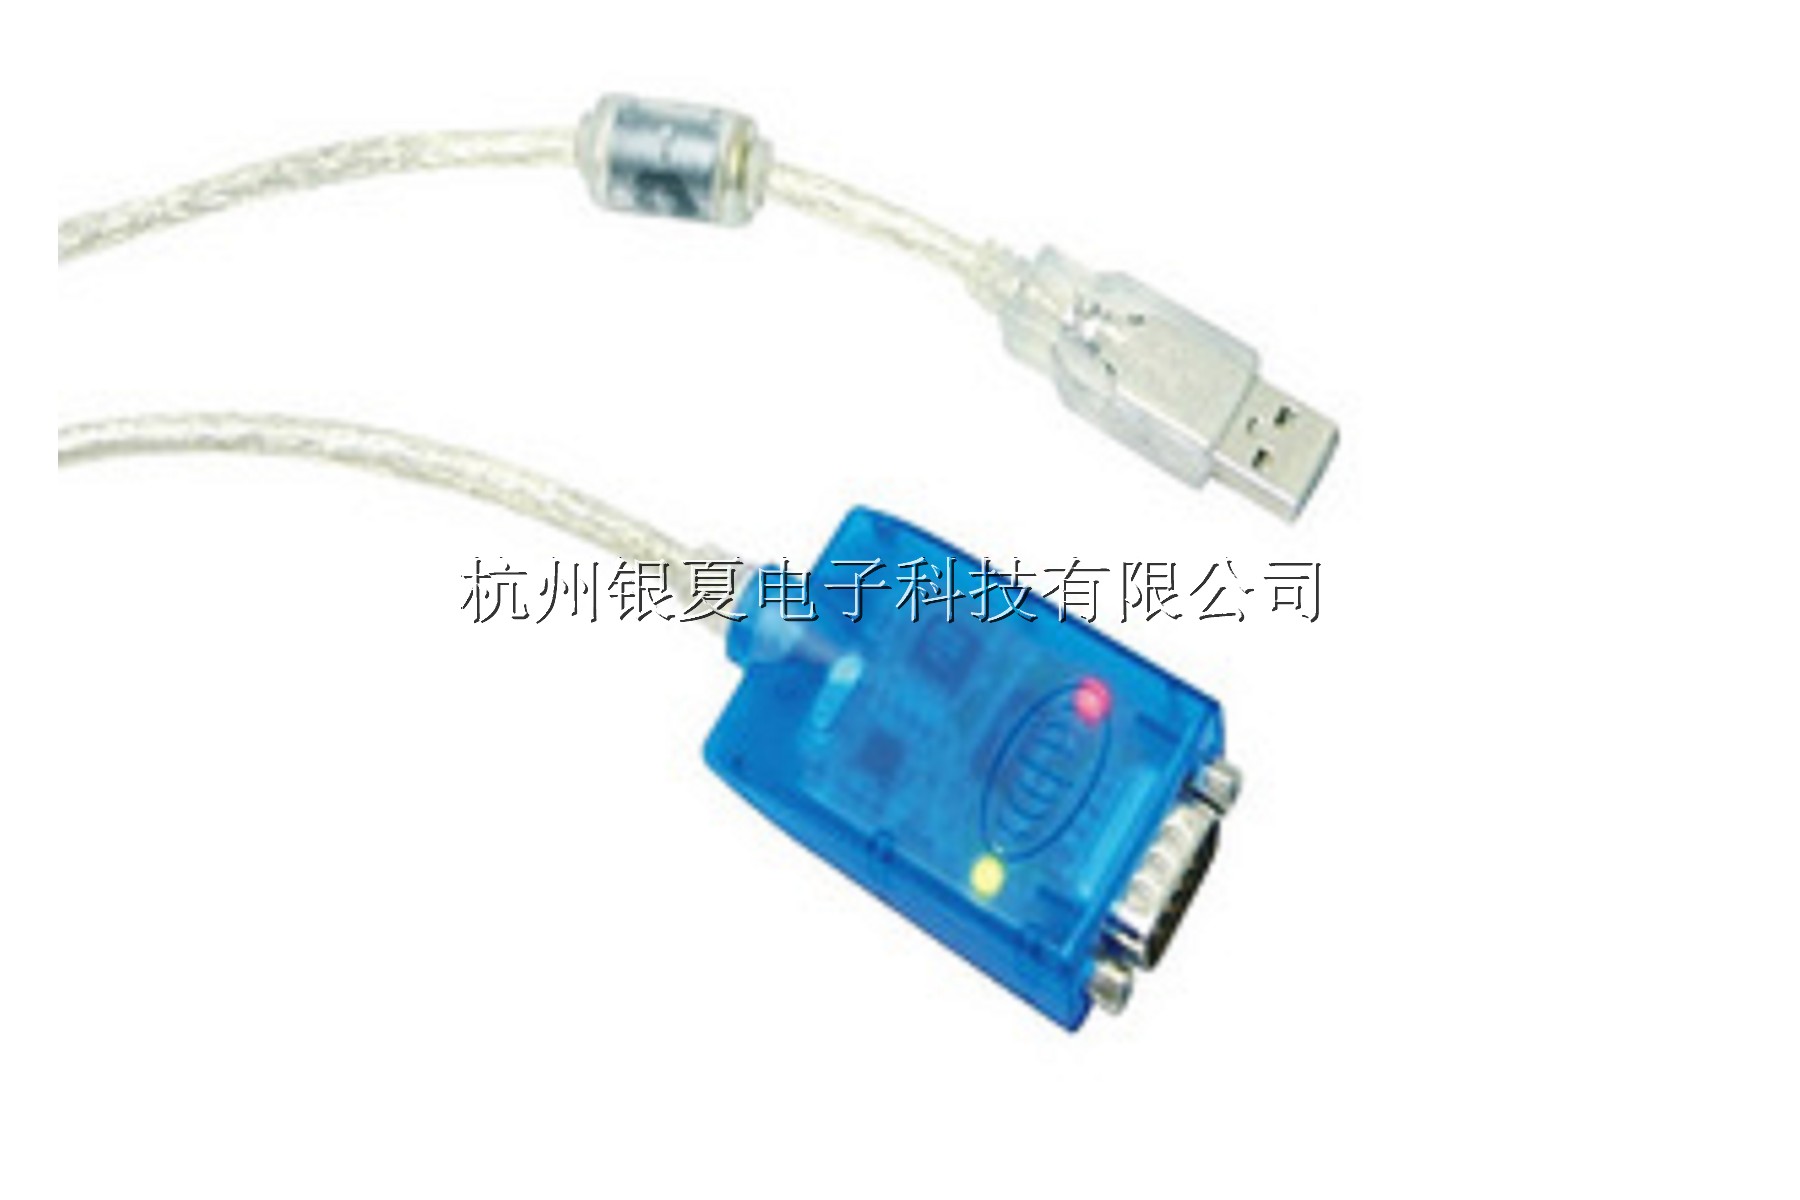 USB-485转换器